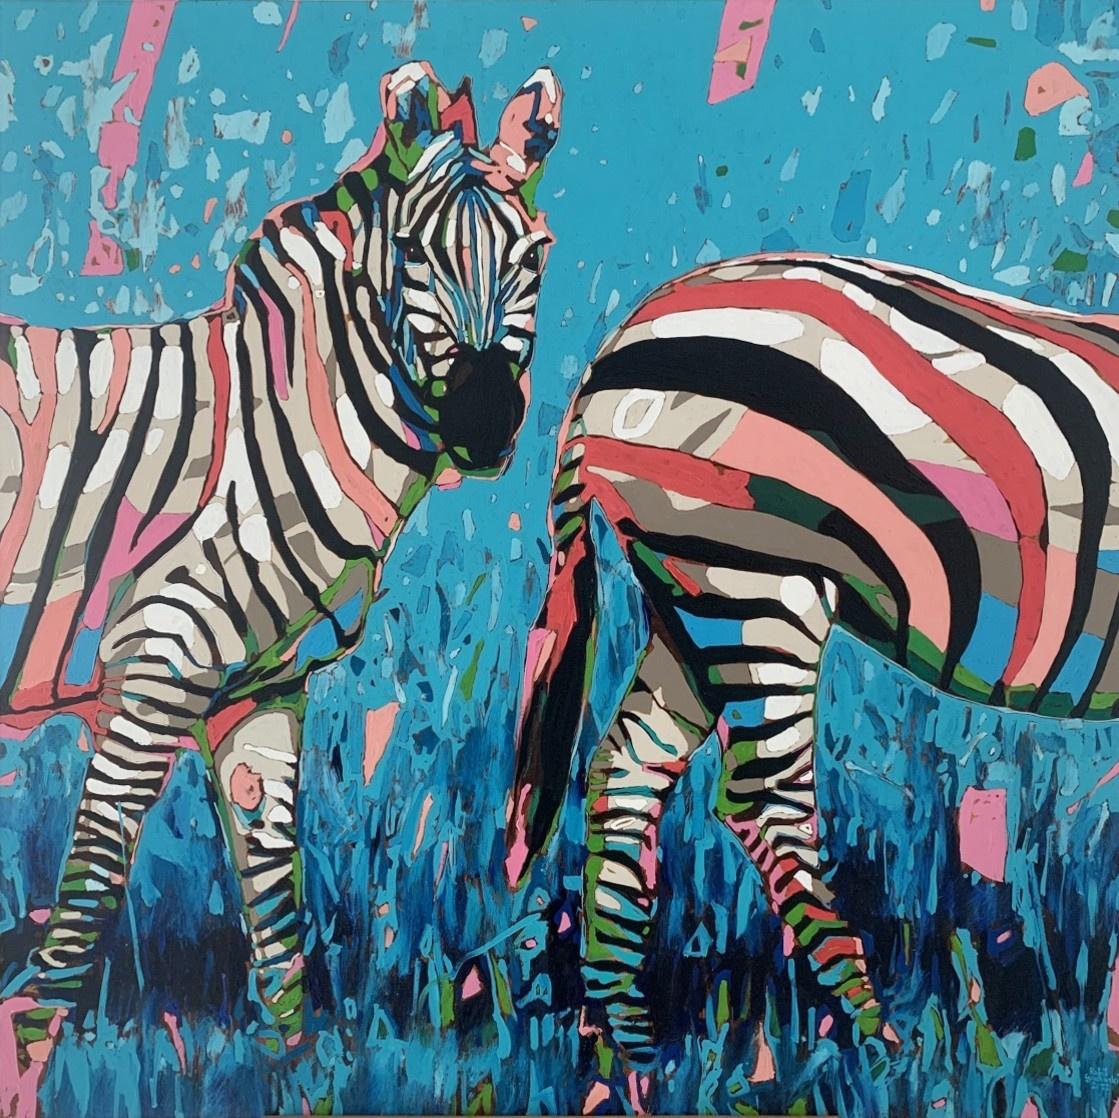 Animal Painting Rafał Gadowski - Zebras - Peinture à l'huile figurative contemporaine, Pop art, animaux, artiste polonais